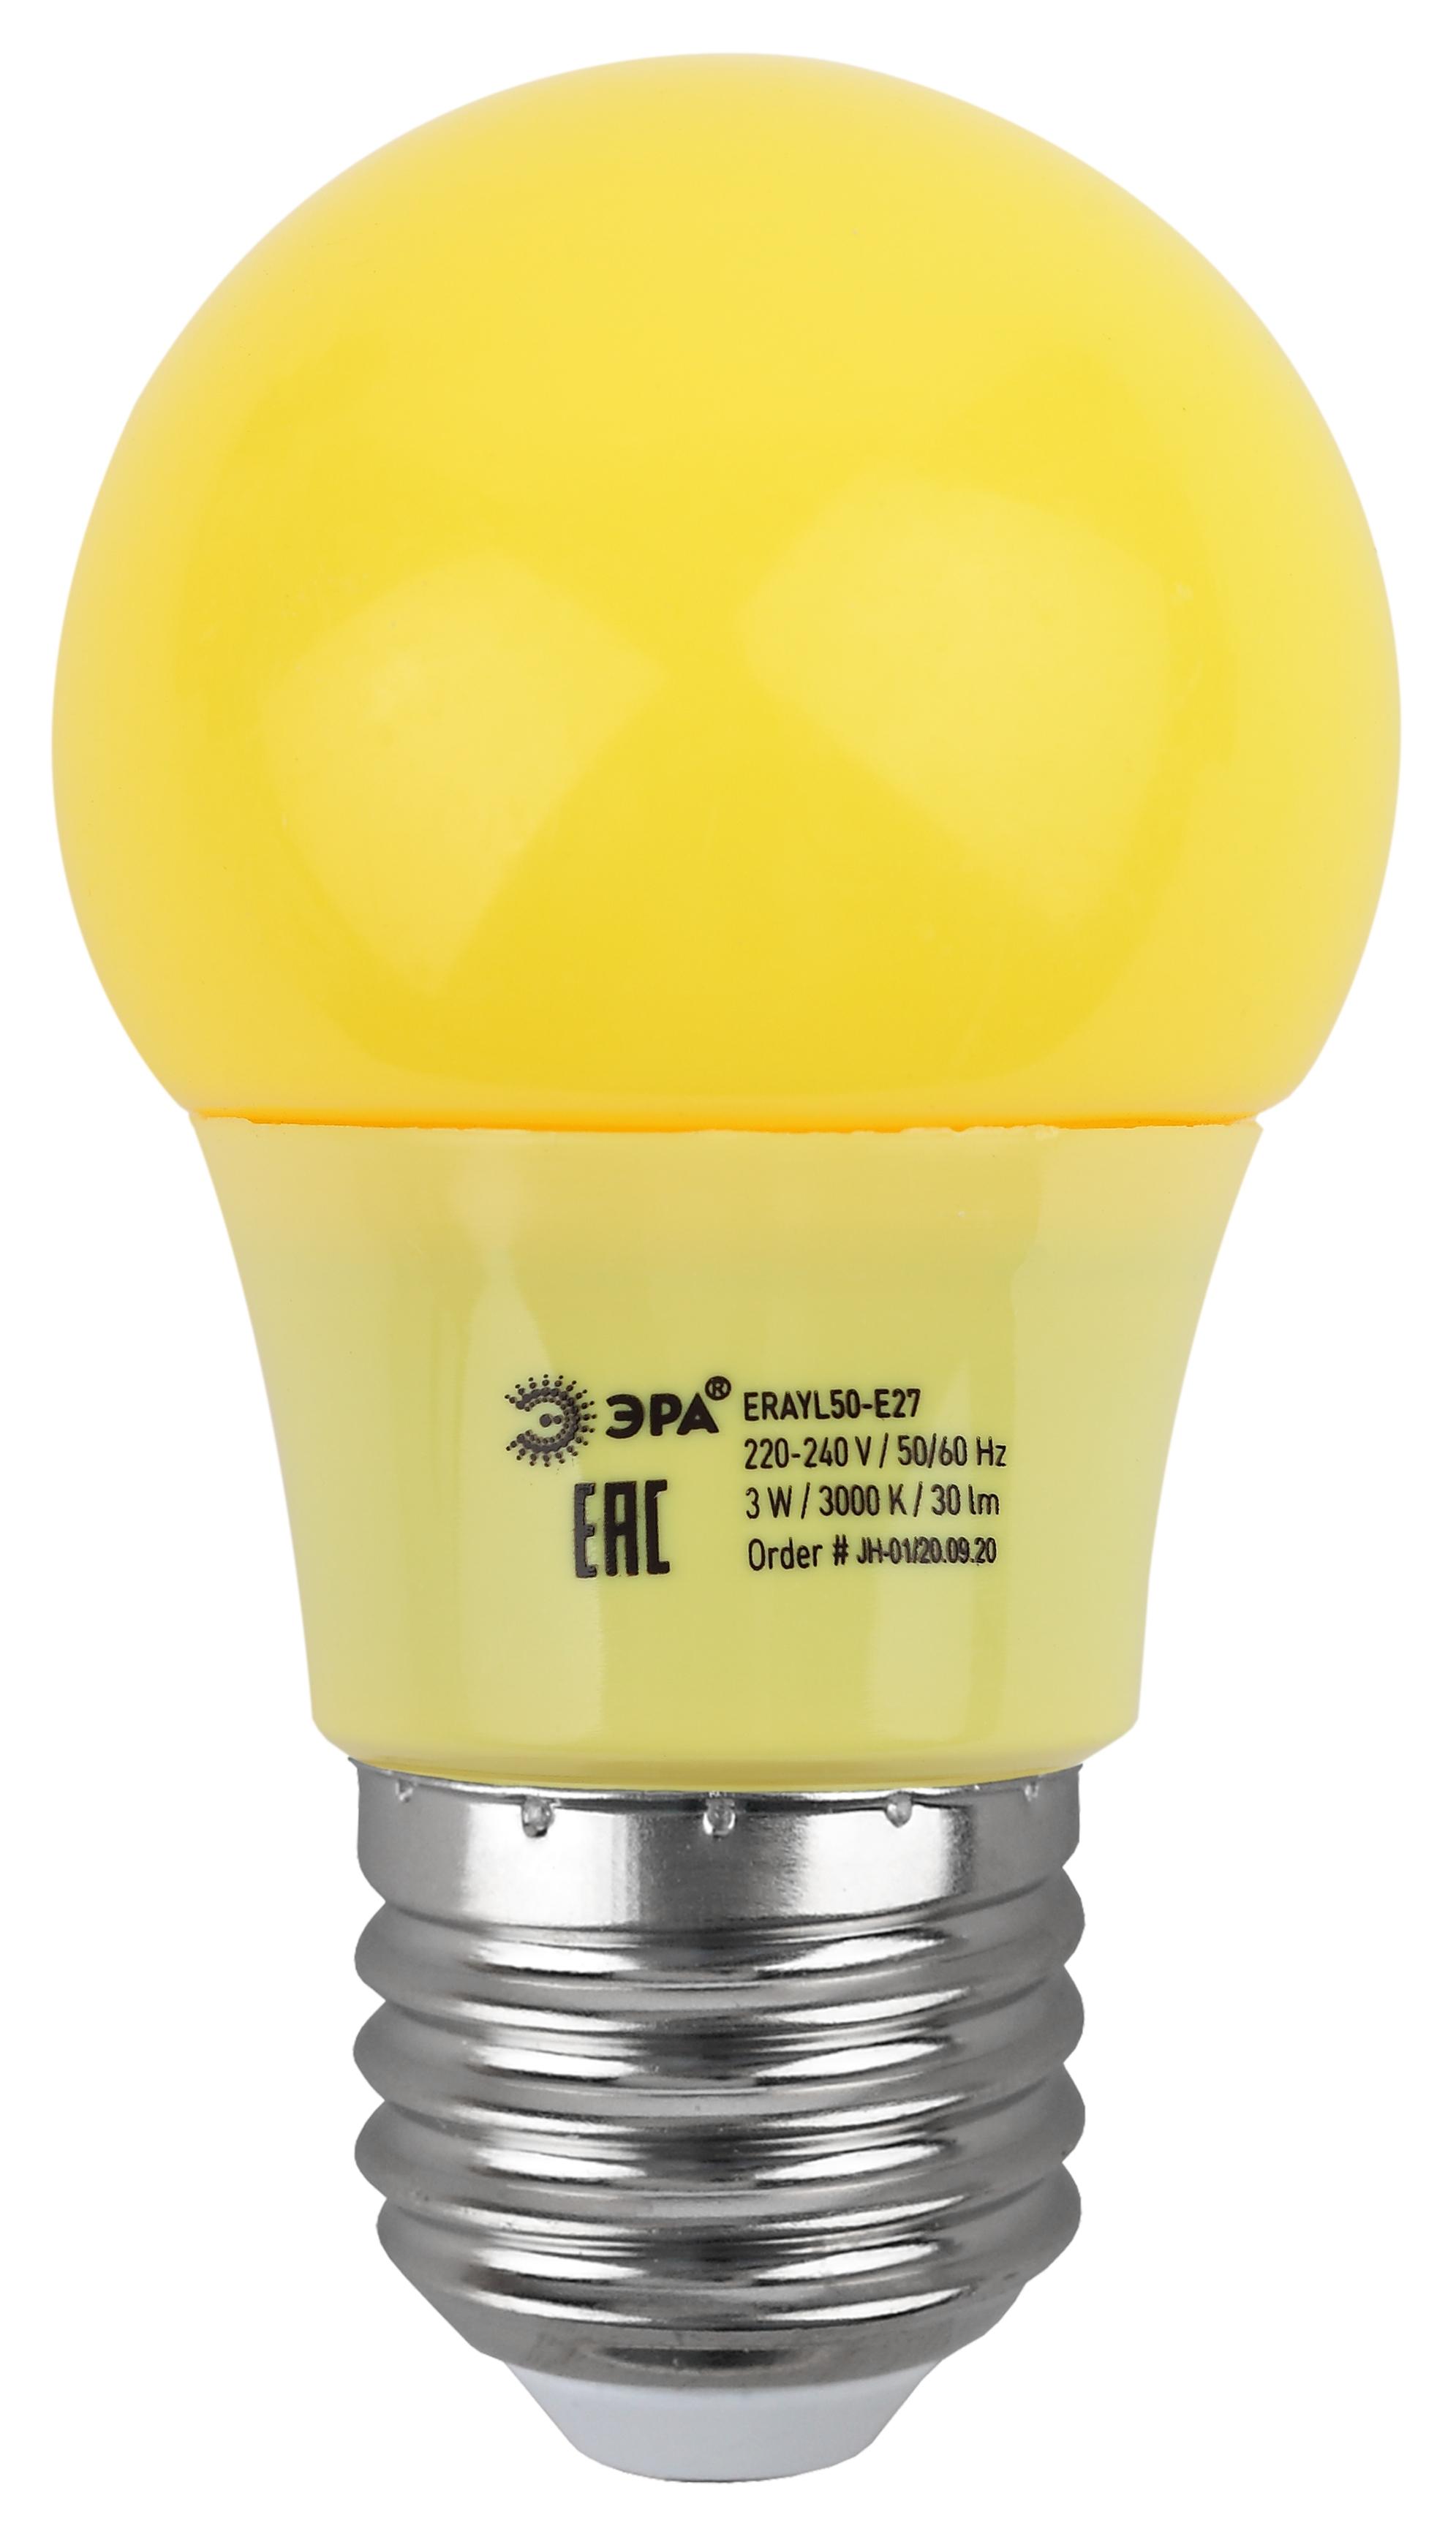 Купить Лампа светодиодная Эра STD ERAYL50-E27 груша для белт-лайт желтый